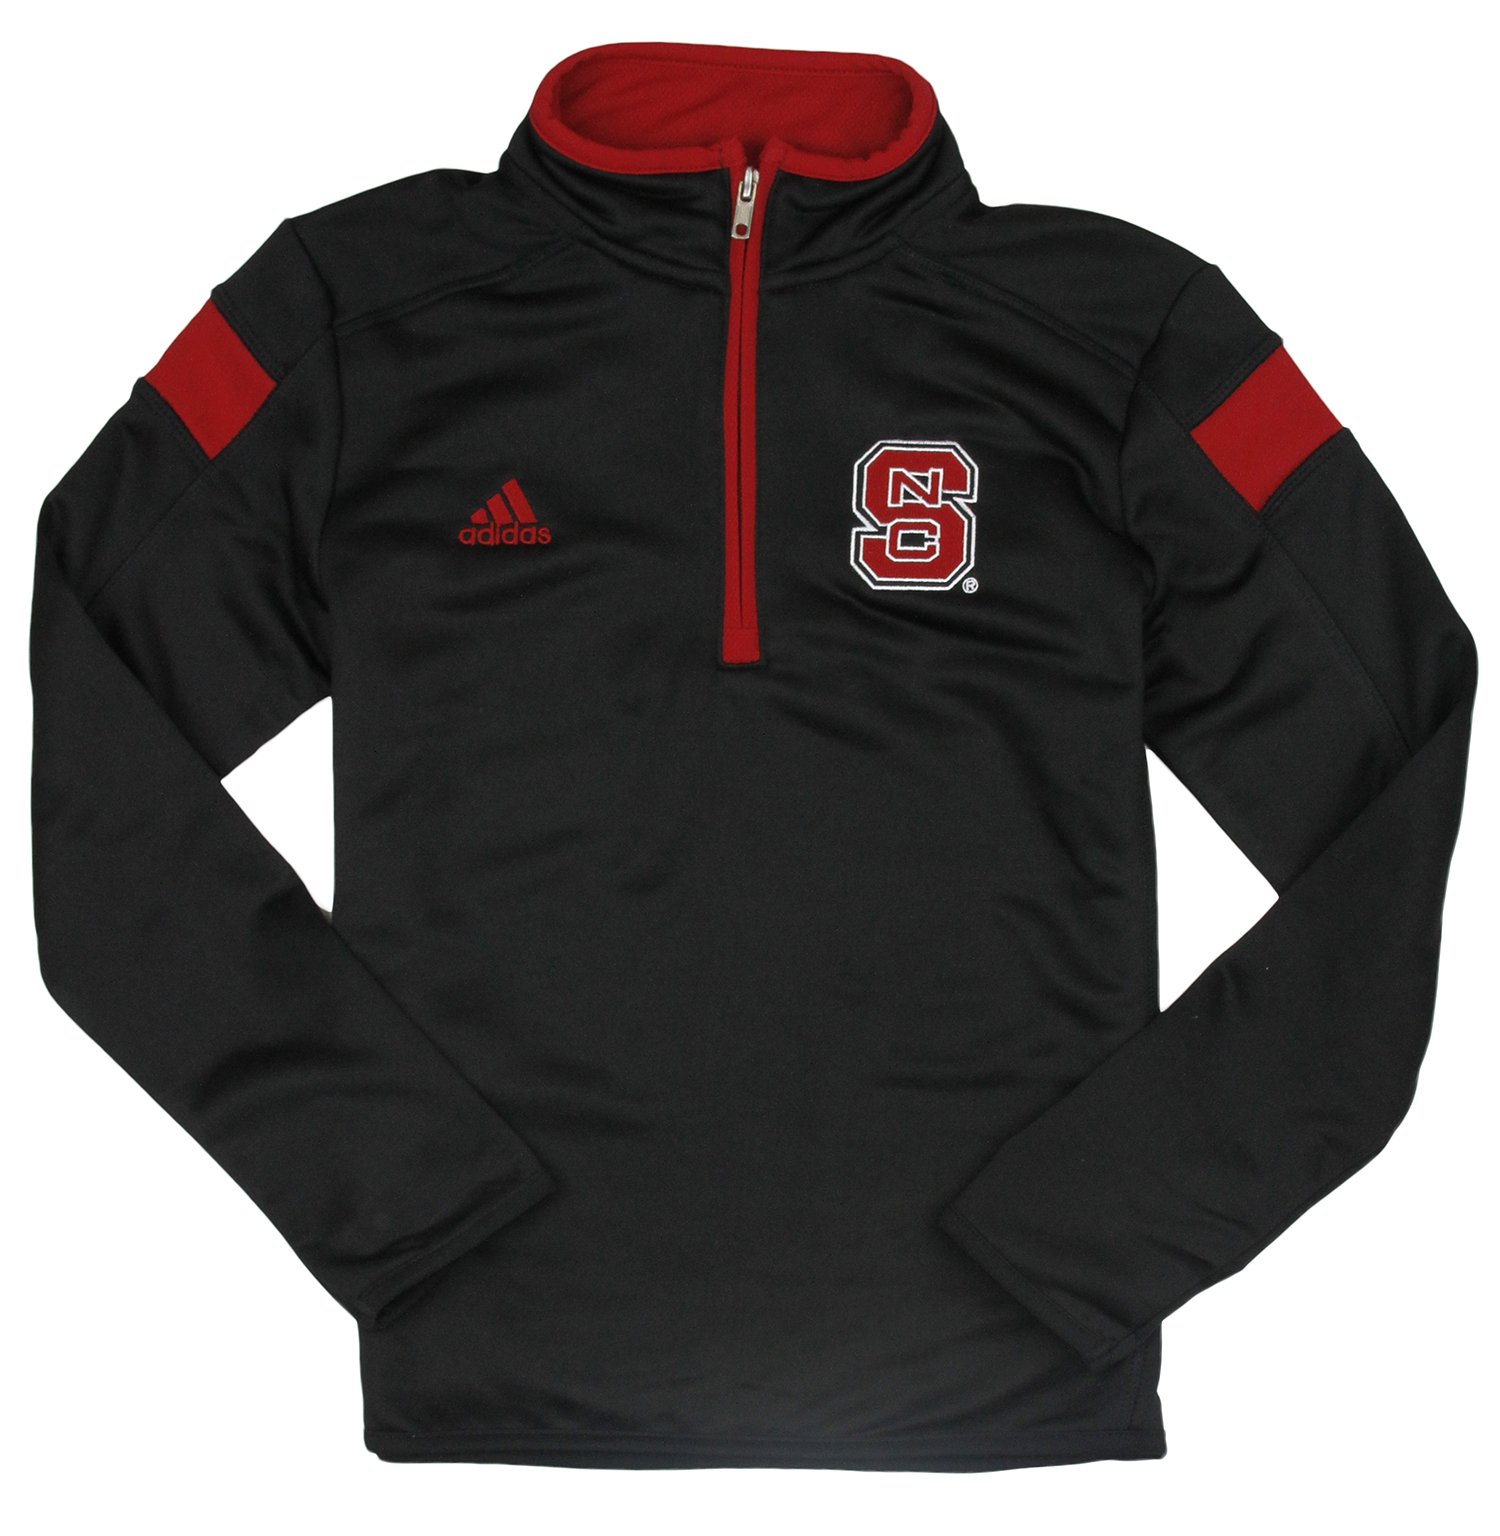 Adidas NCAA Youth North Carolina State Wolfpack Shockline Coaches Jacket - image 1 of 1